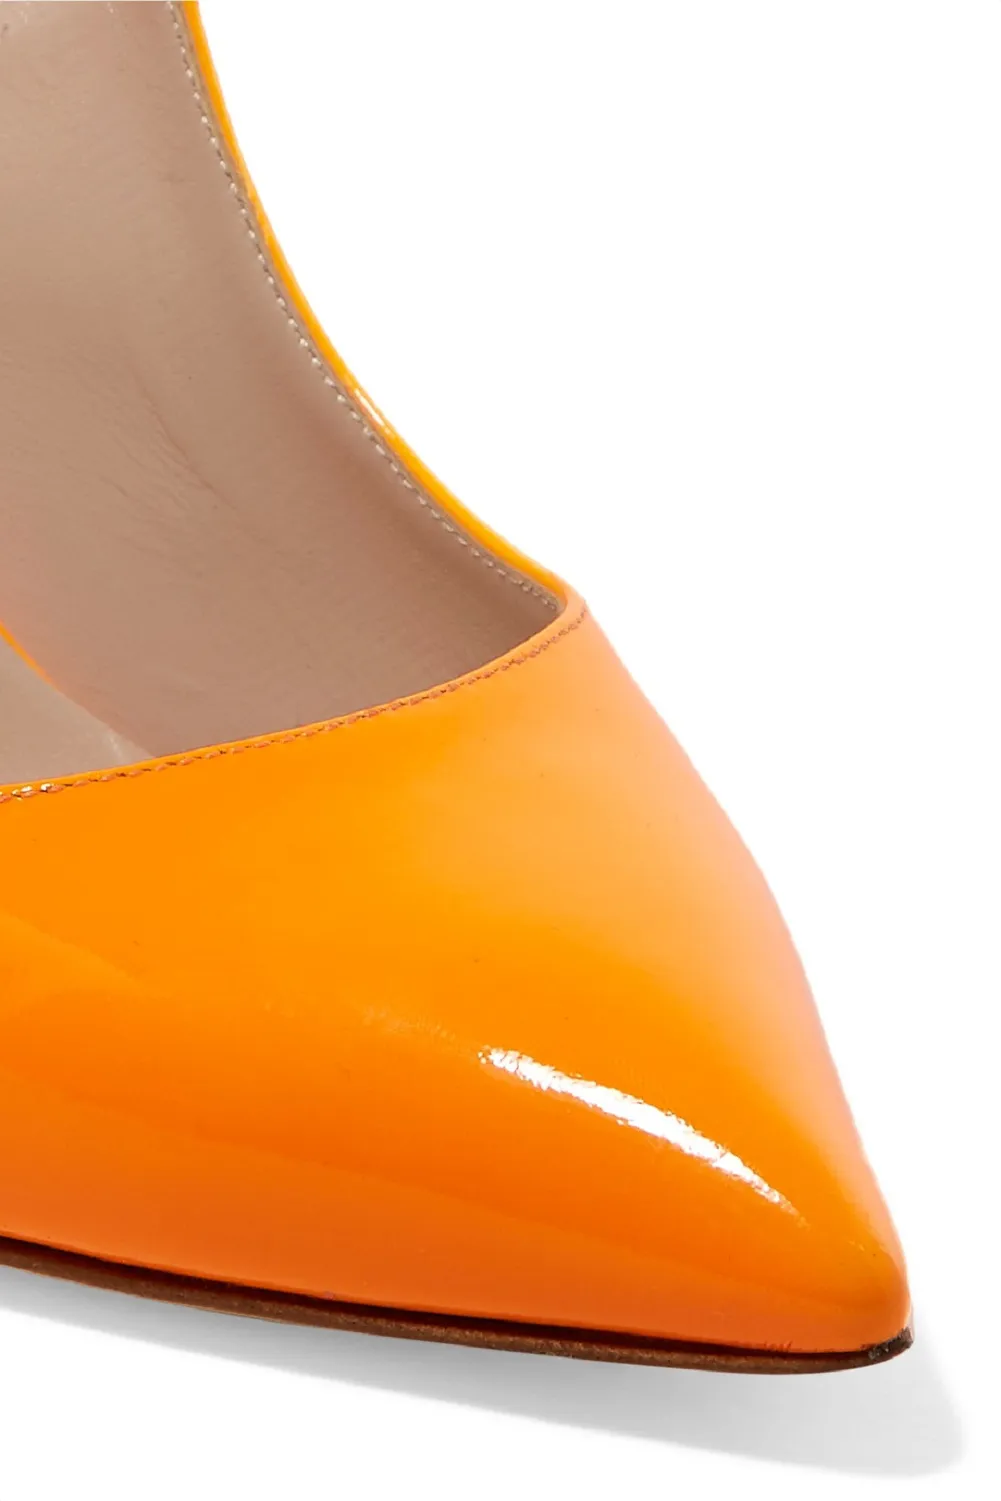 Zandina New Arrival Damskie Ręcznie Patent Skórzane Buty Slingback Spiczasty Heel Heel Fashion Party Prom Pomps